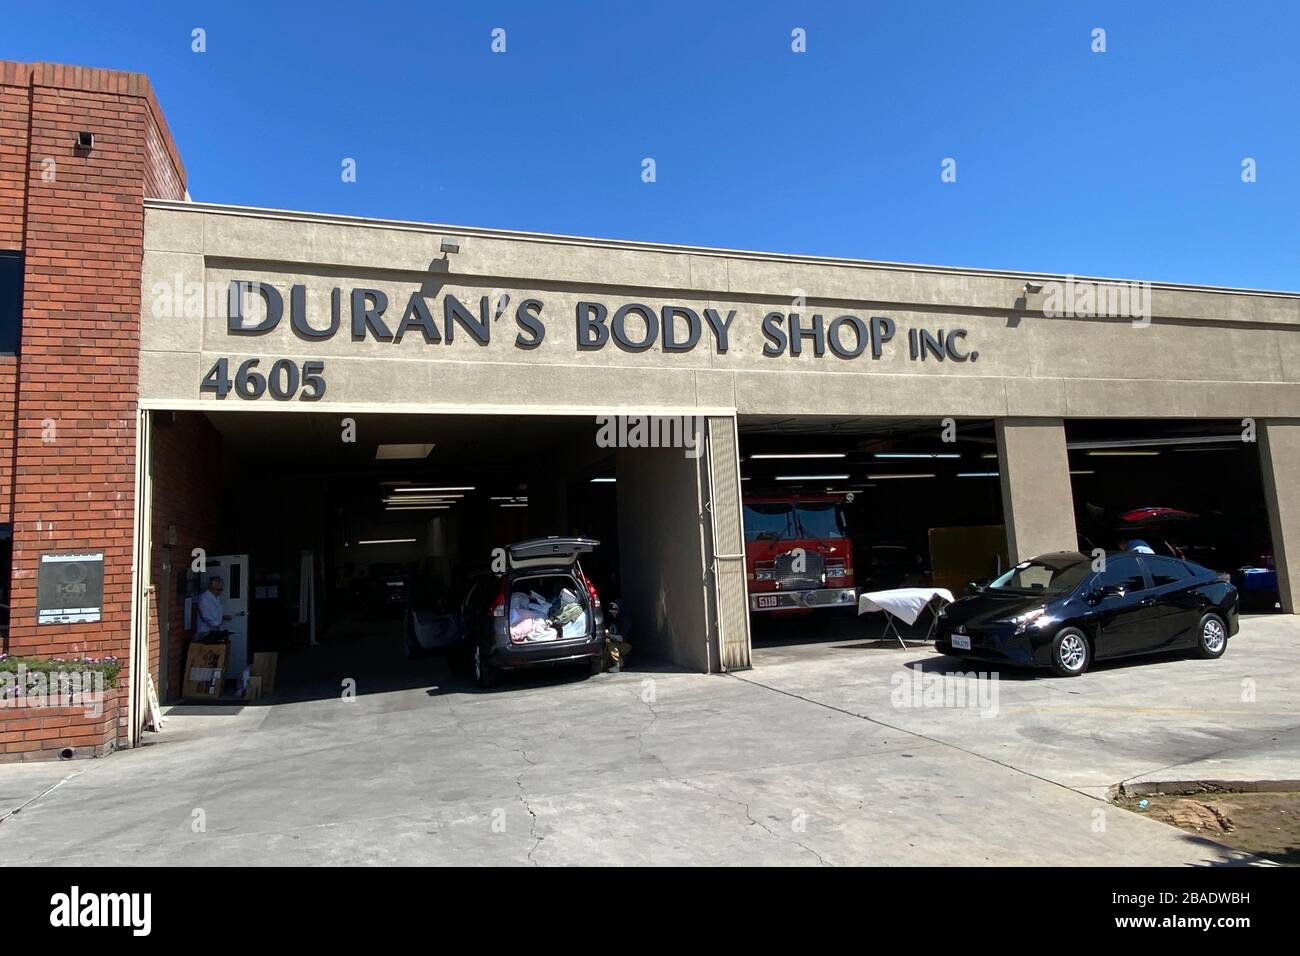 Visione generale del Body Shop di Duran in mezzo all'epidemia globale di coroinavirus COVID-19, giovedì 26 marzo 2020, a Los Angeles. (Foto di IOS/Espa-Images) Foto Stock